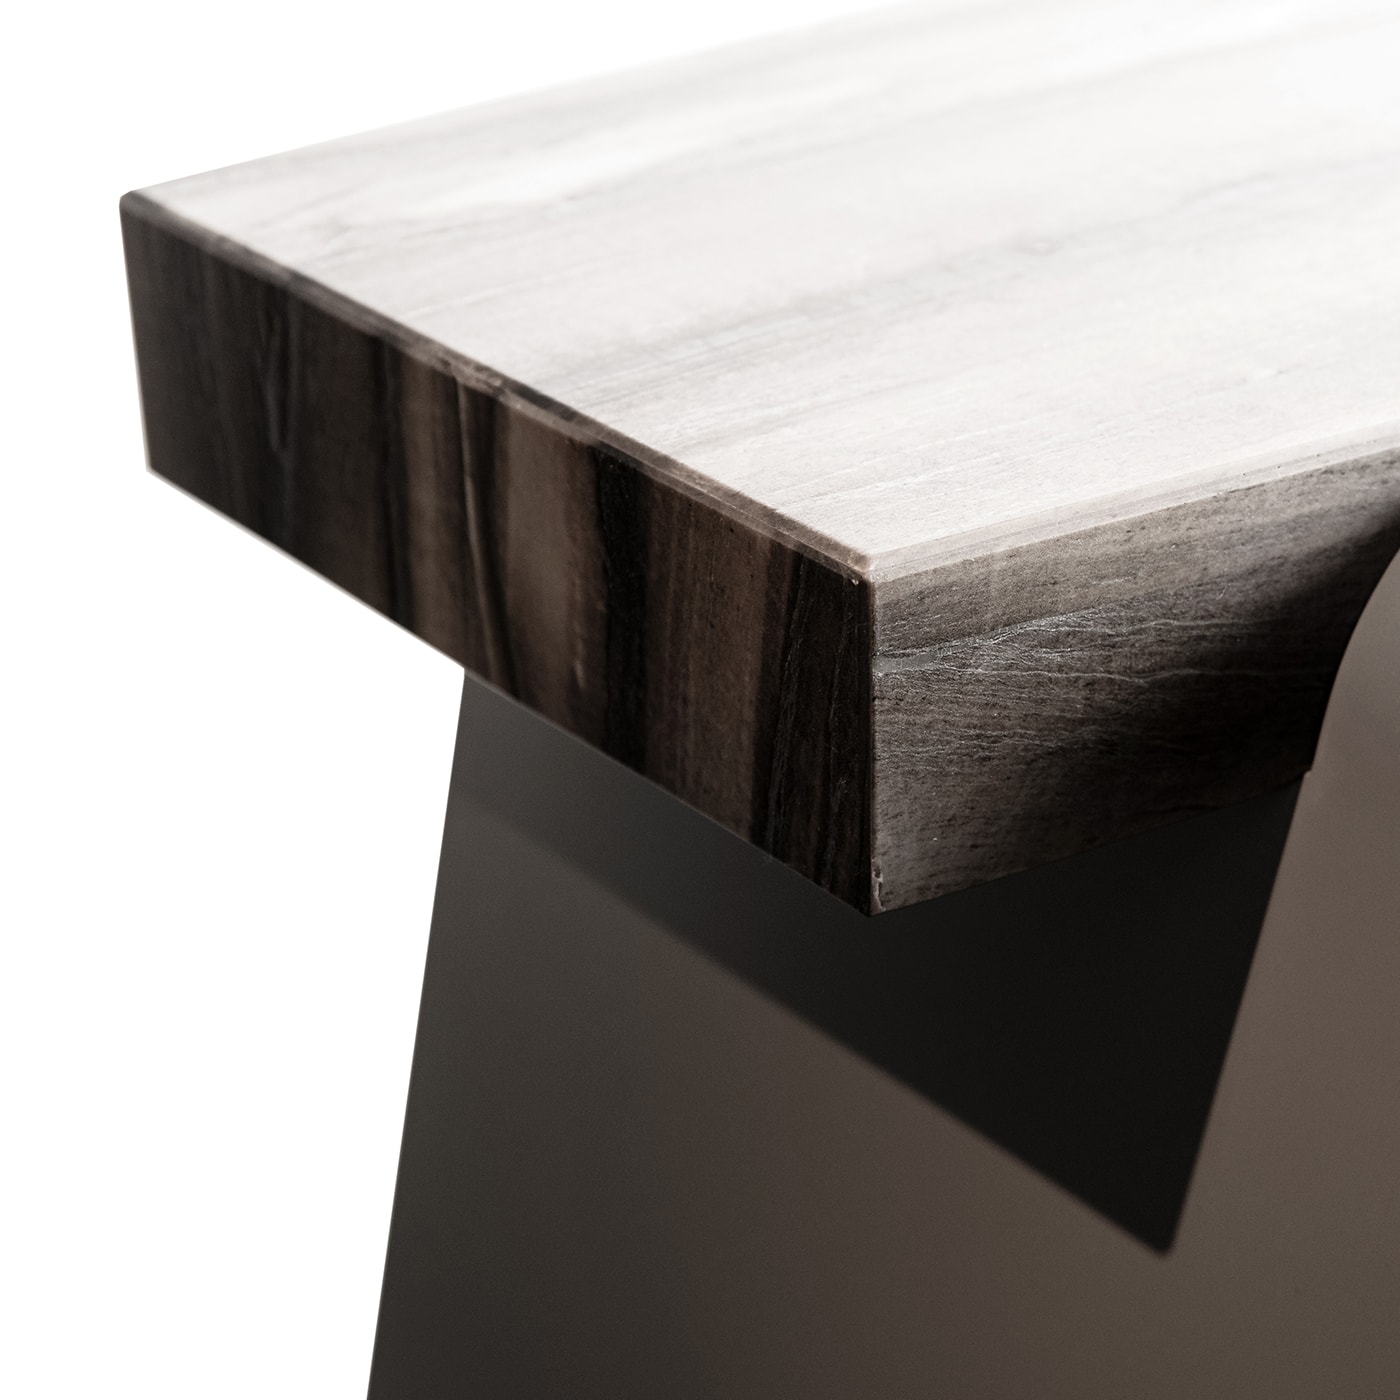 Tabula Rasa N°1 Silver Table by MM Design  - Officina Della Scala